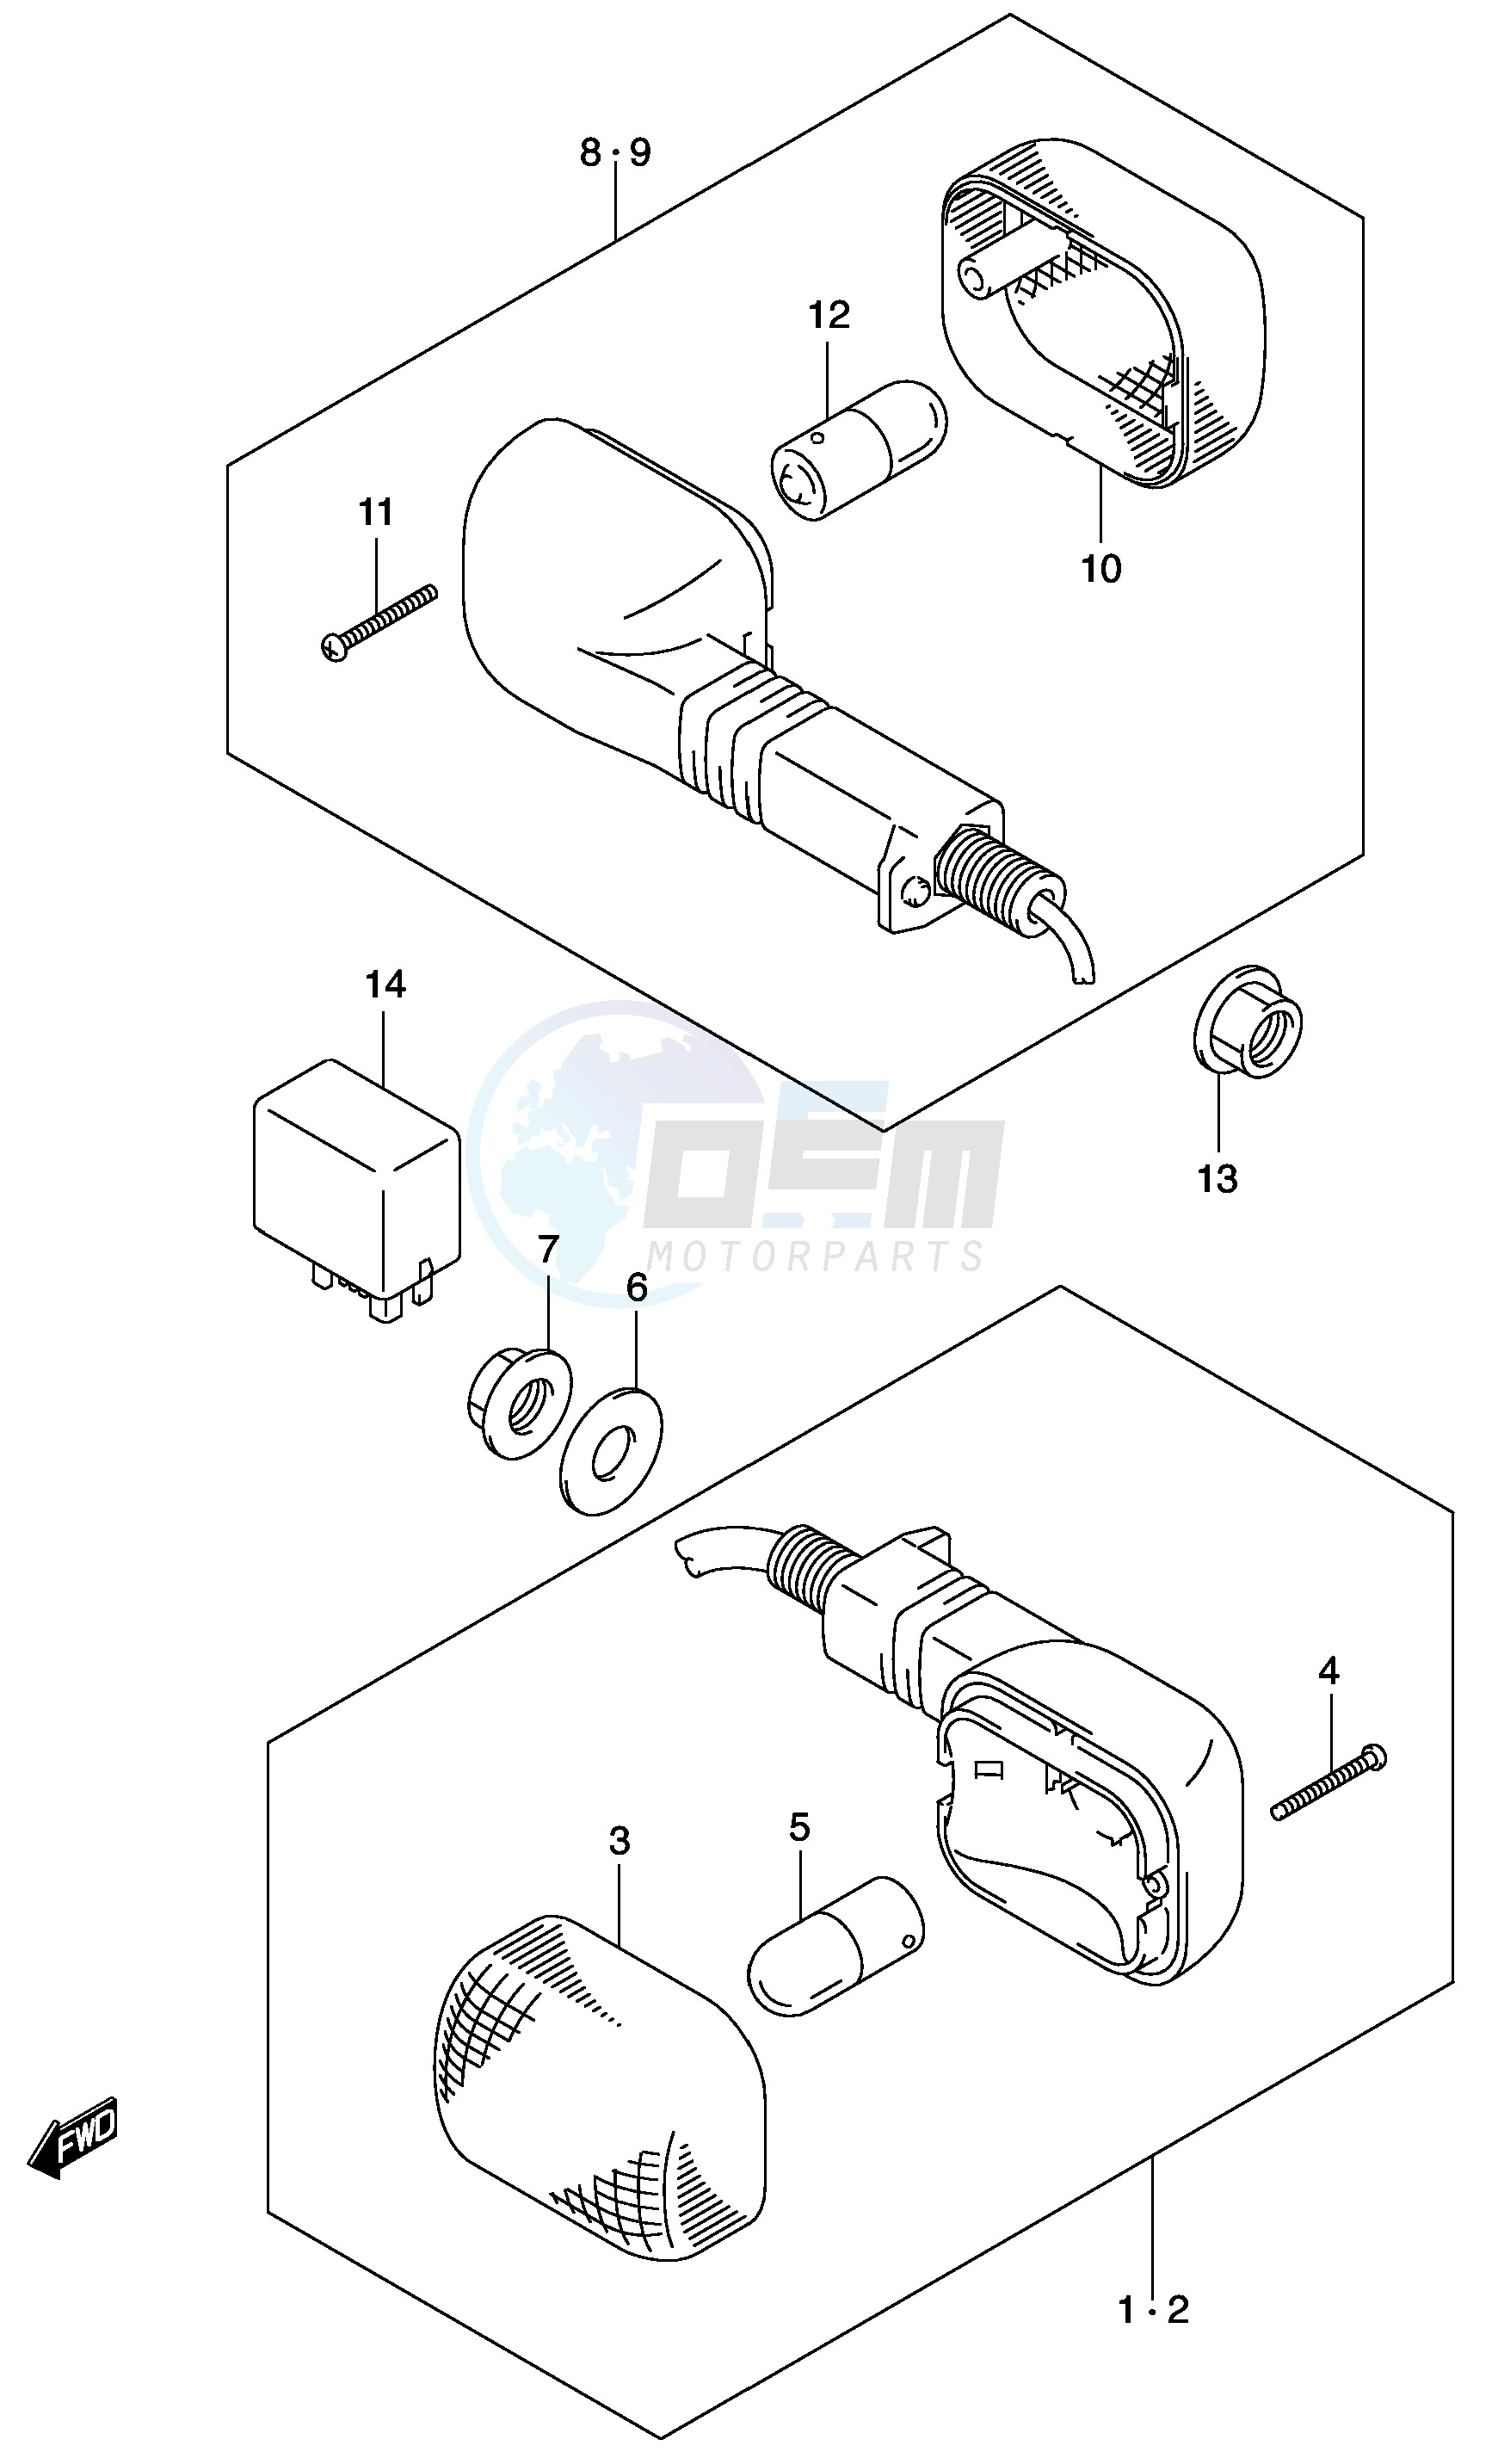 TURNSIGNAL LAMP (MODEL K2 K3) blueprint